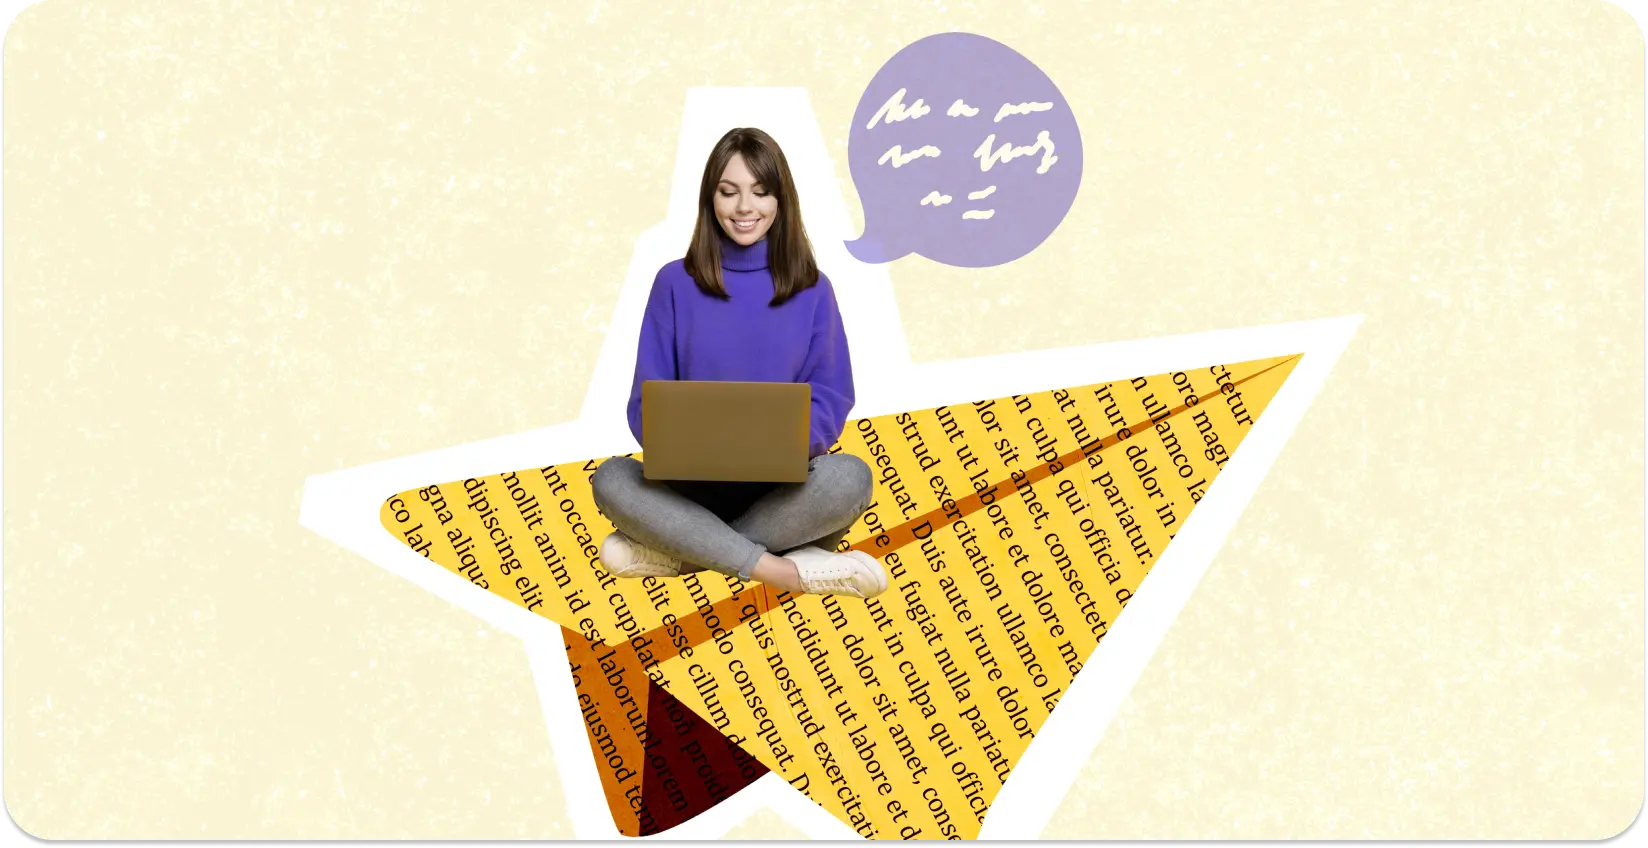 Een schrijver zit met een laptop op een stervormige collage van met tekst gevulde pagina's.